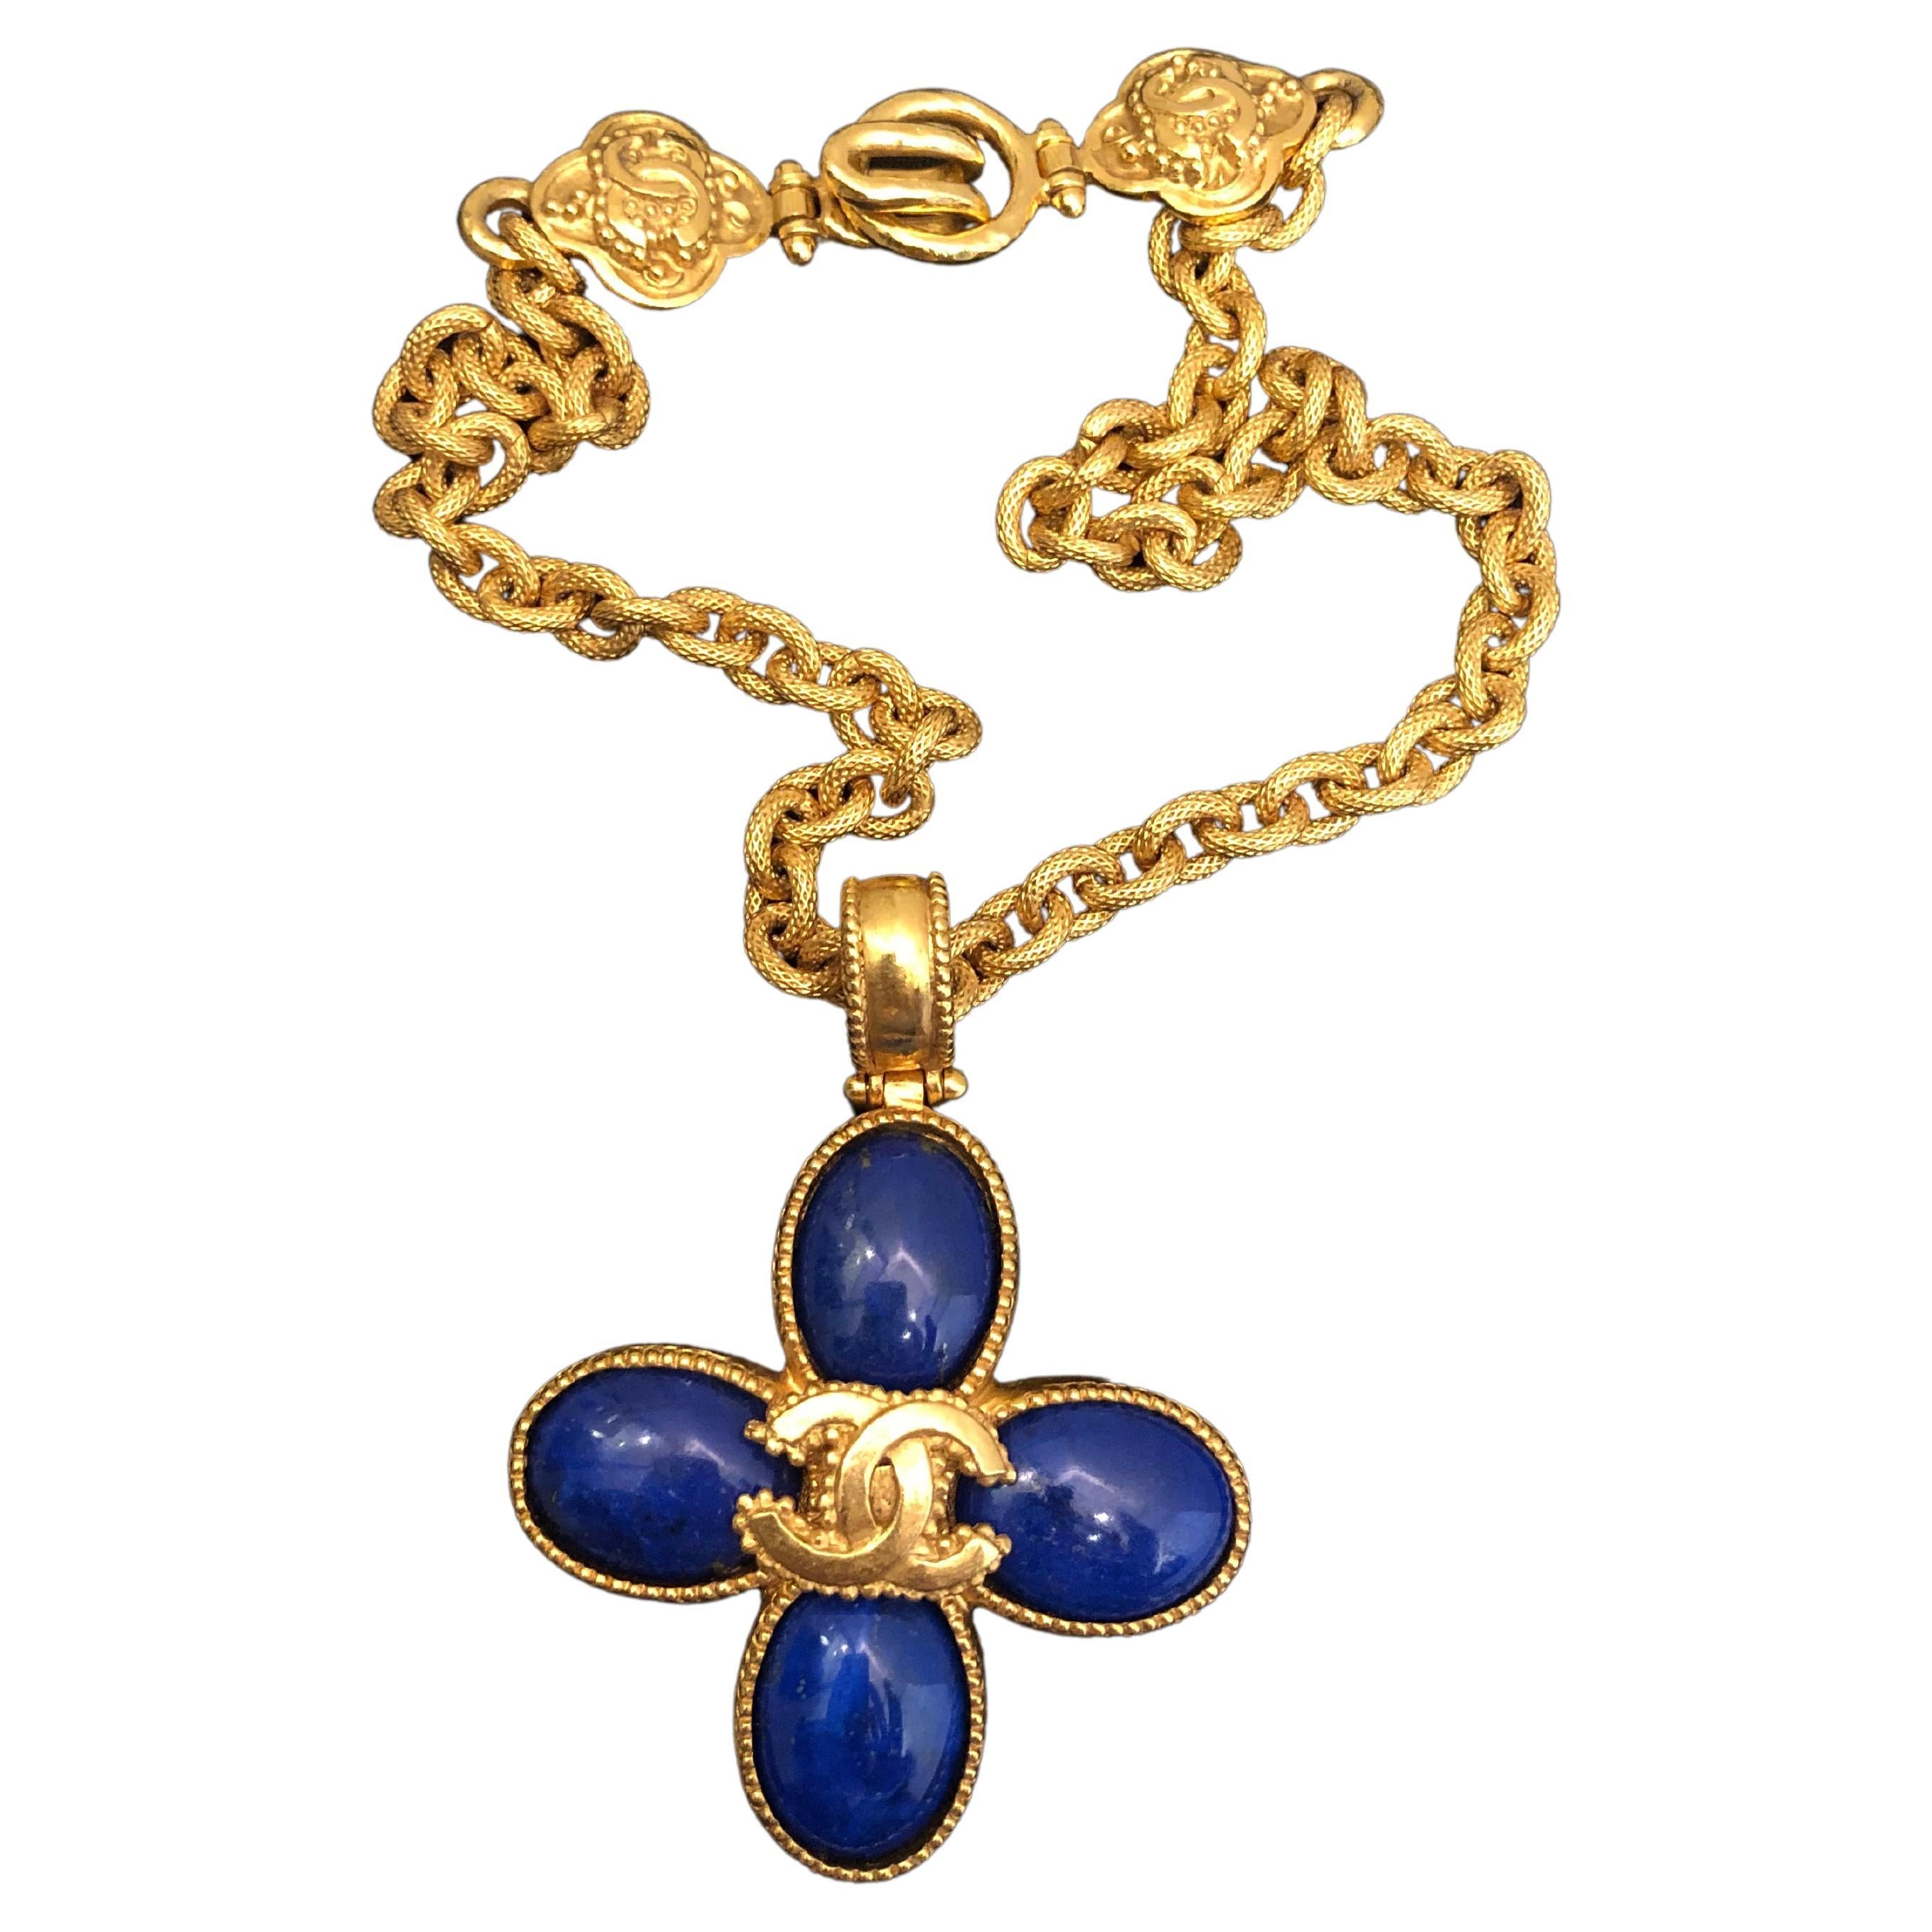 Vintage CHANEL Blue Lapis Lazuli Clover Gold Toned CC Chain Necklace For Sale